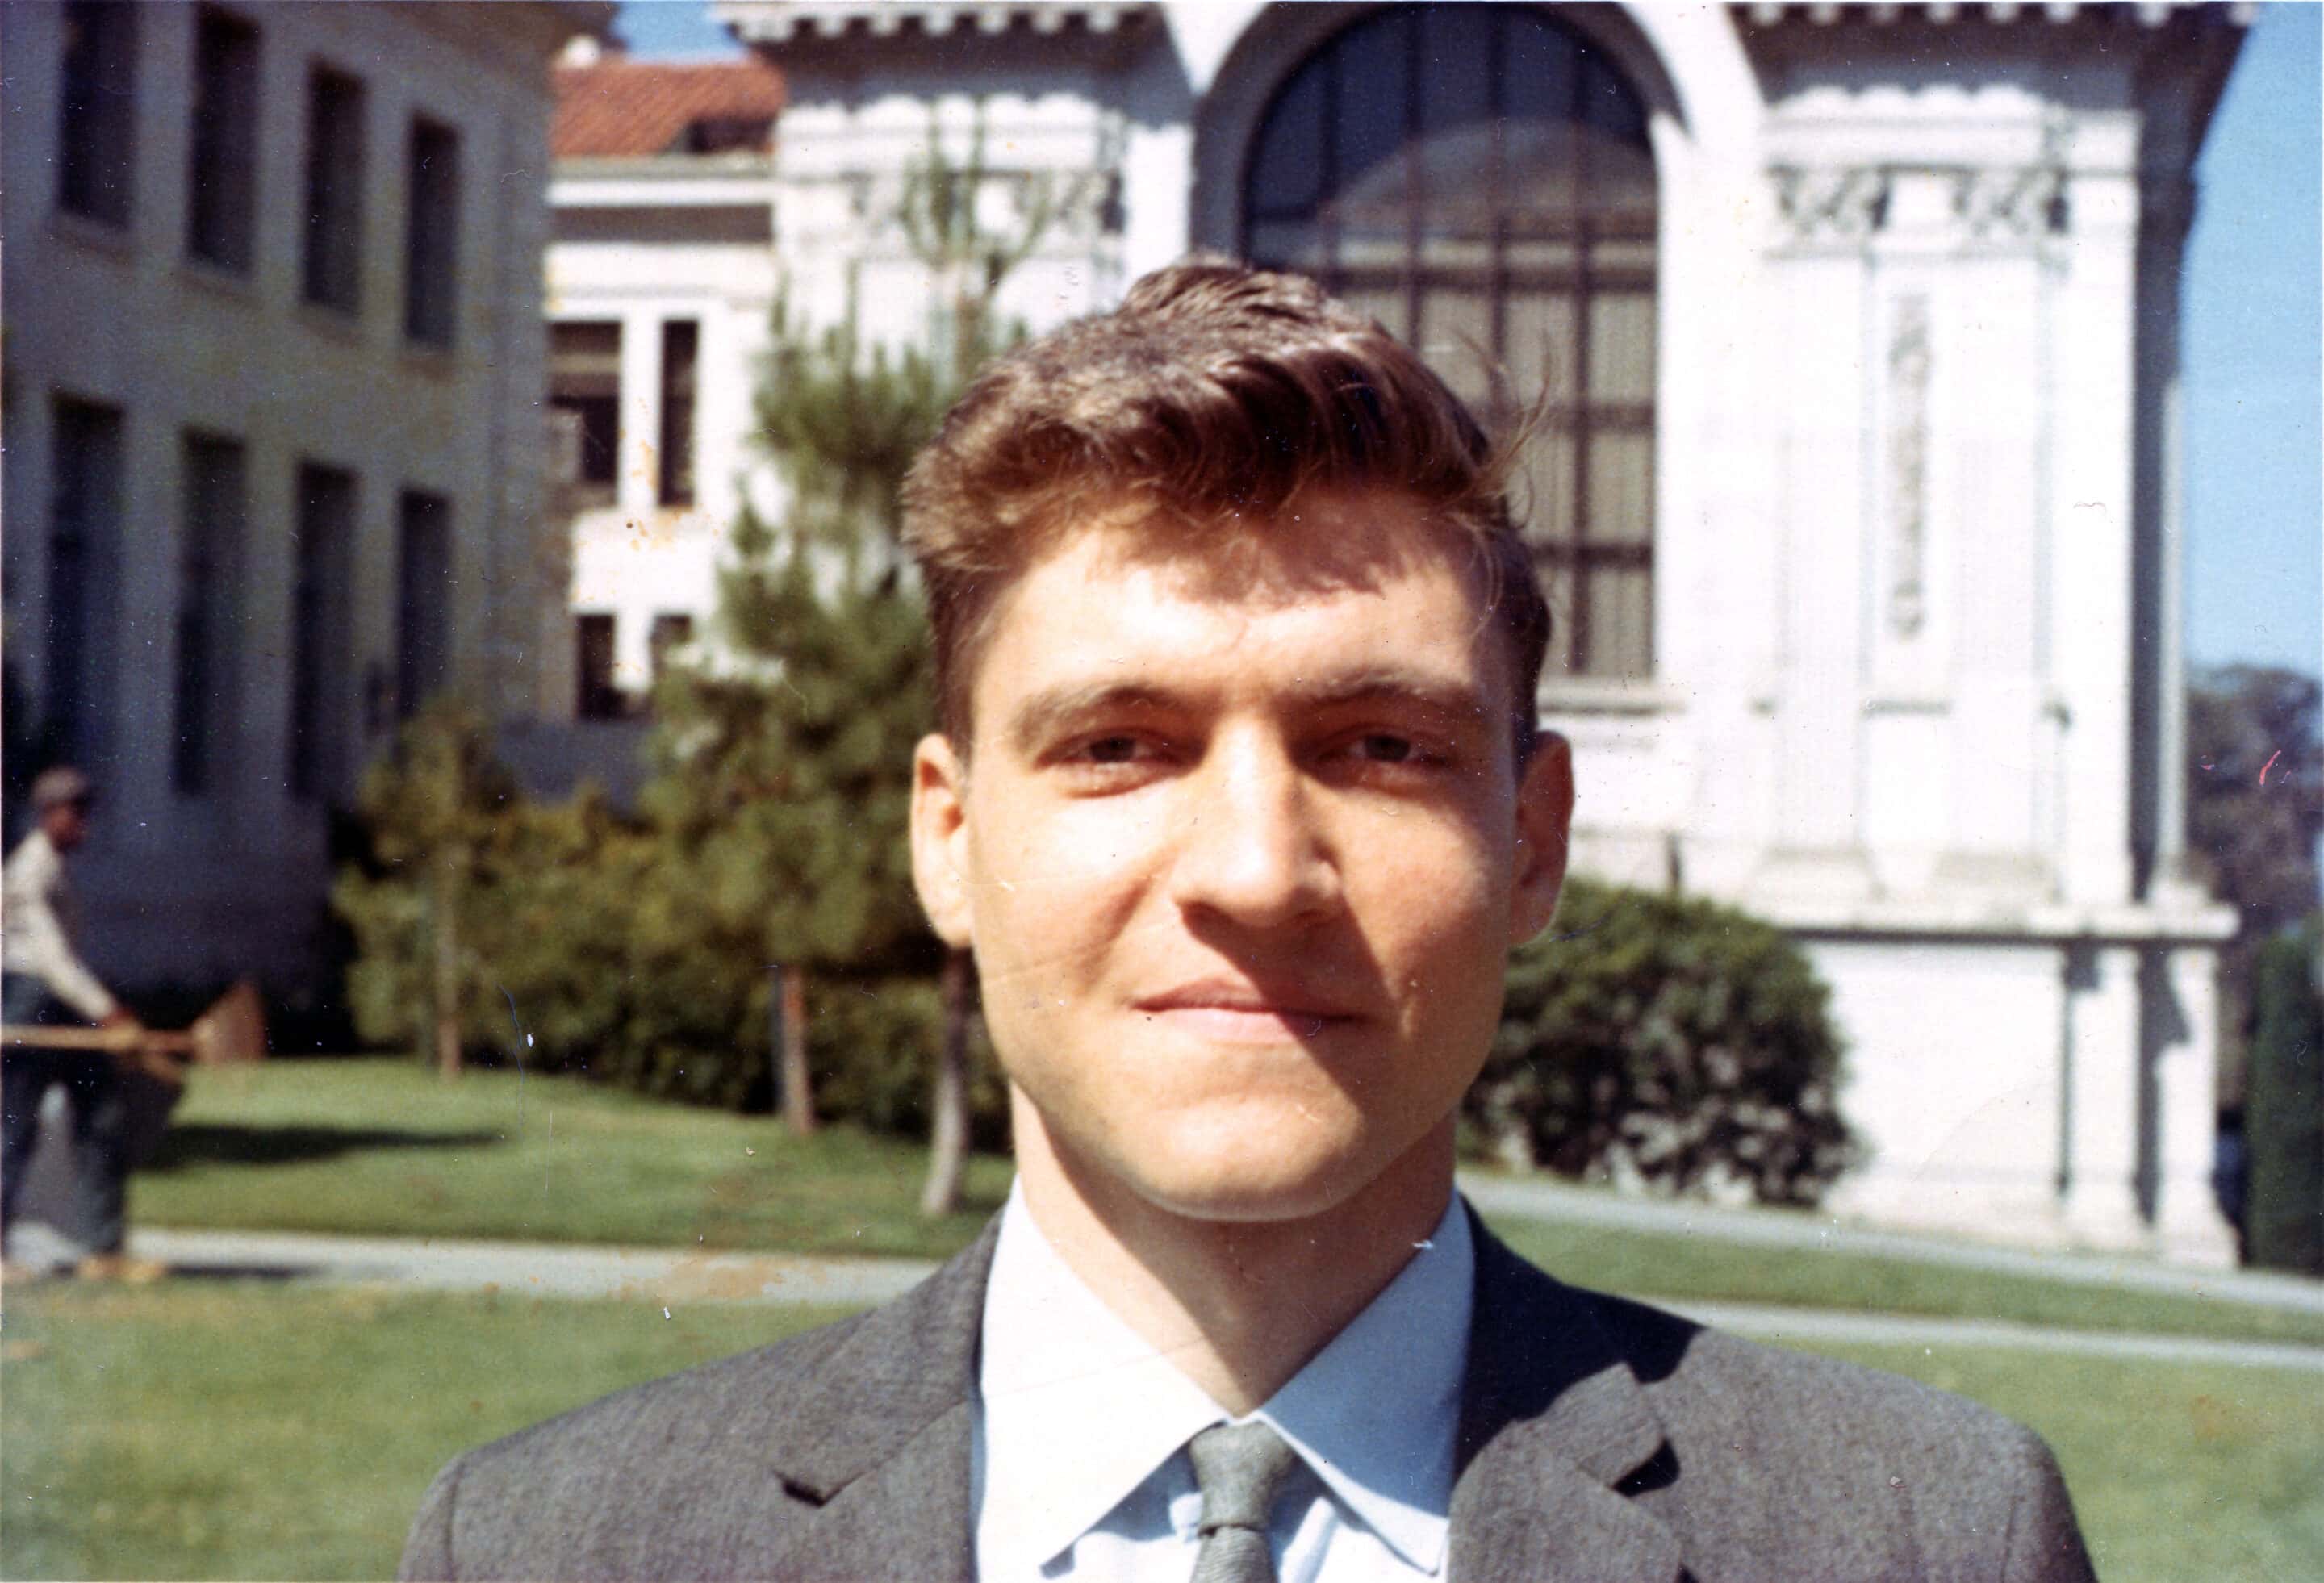 Theodore Kaczynski en tant que professeur assistant à l'université de Californie à Berkeley en 1967.
Crédit : George Bergman, Wikimedia commons